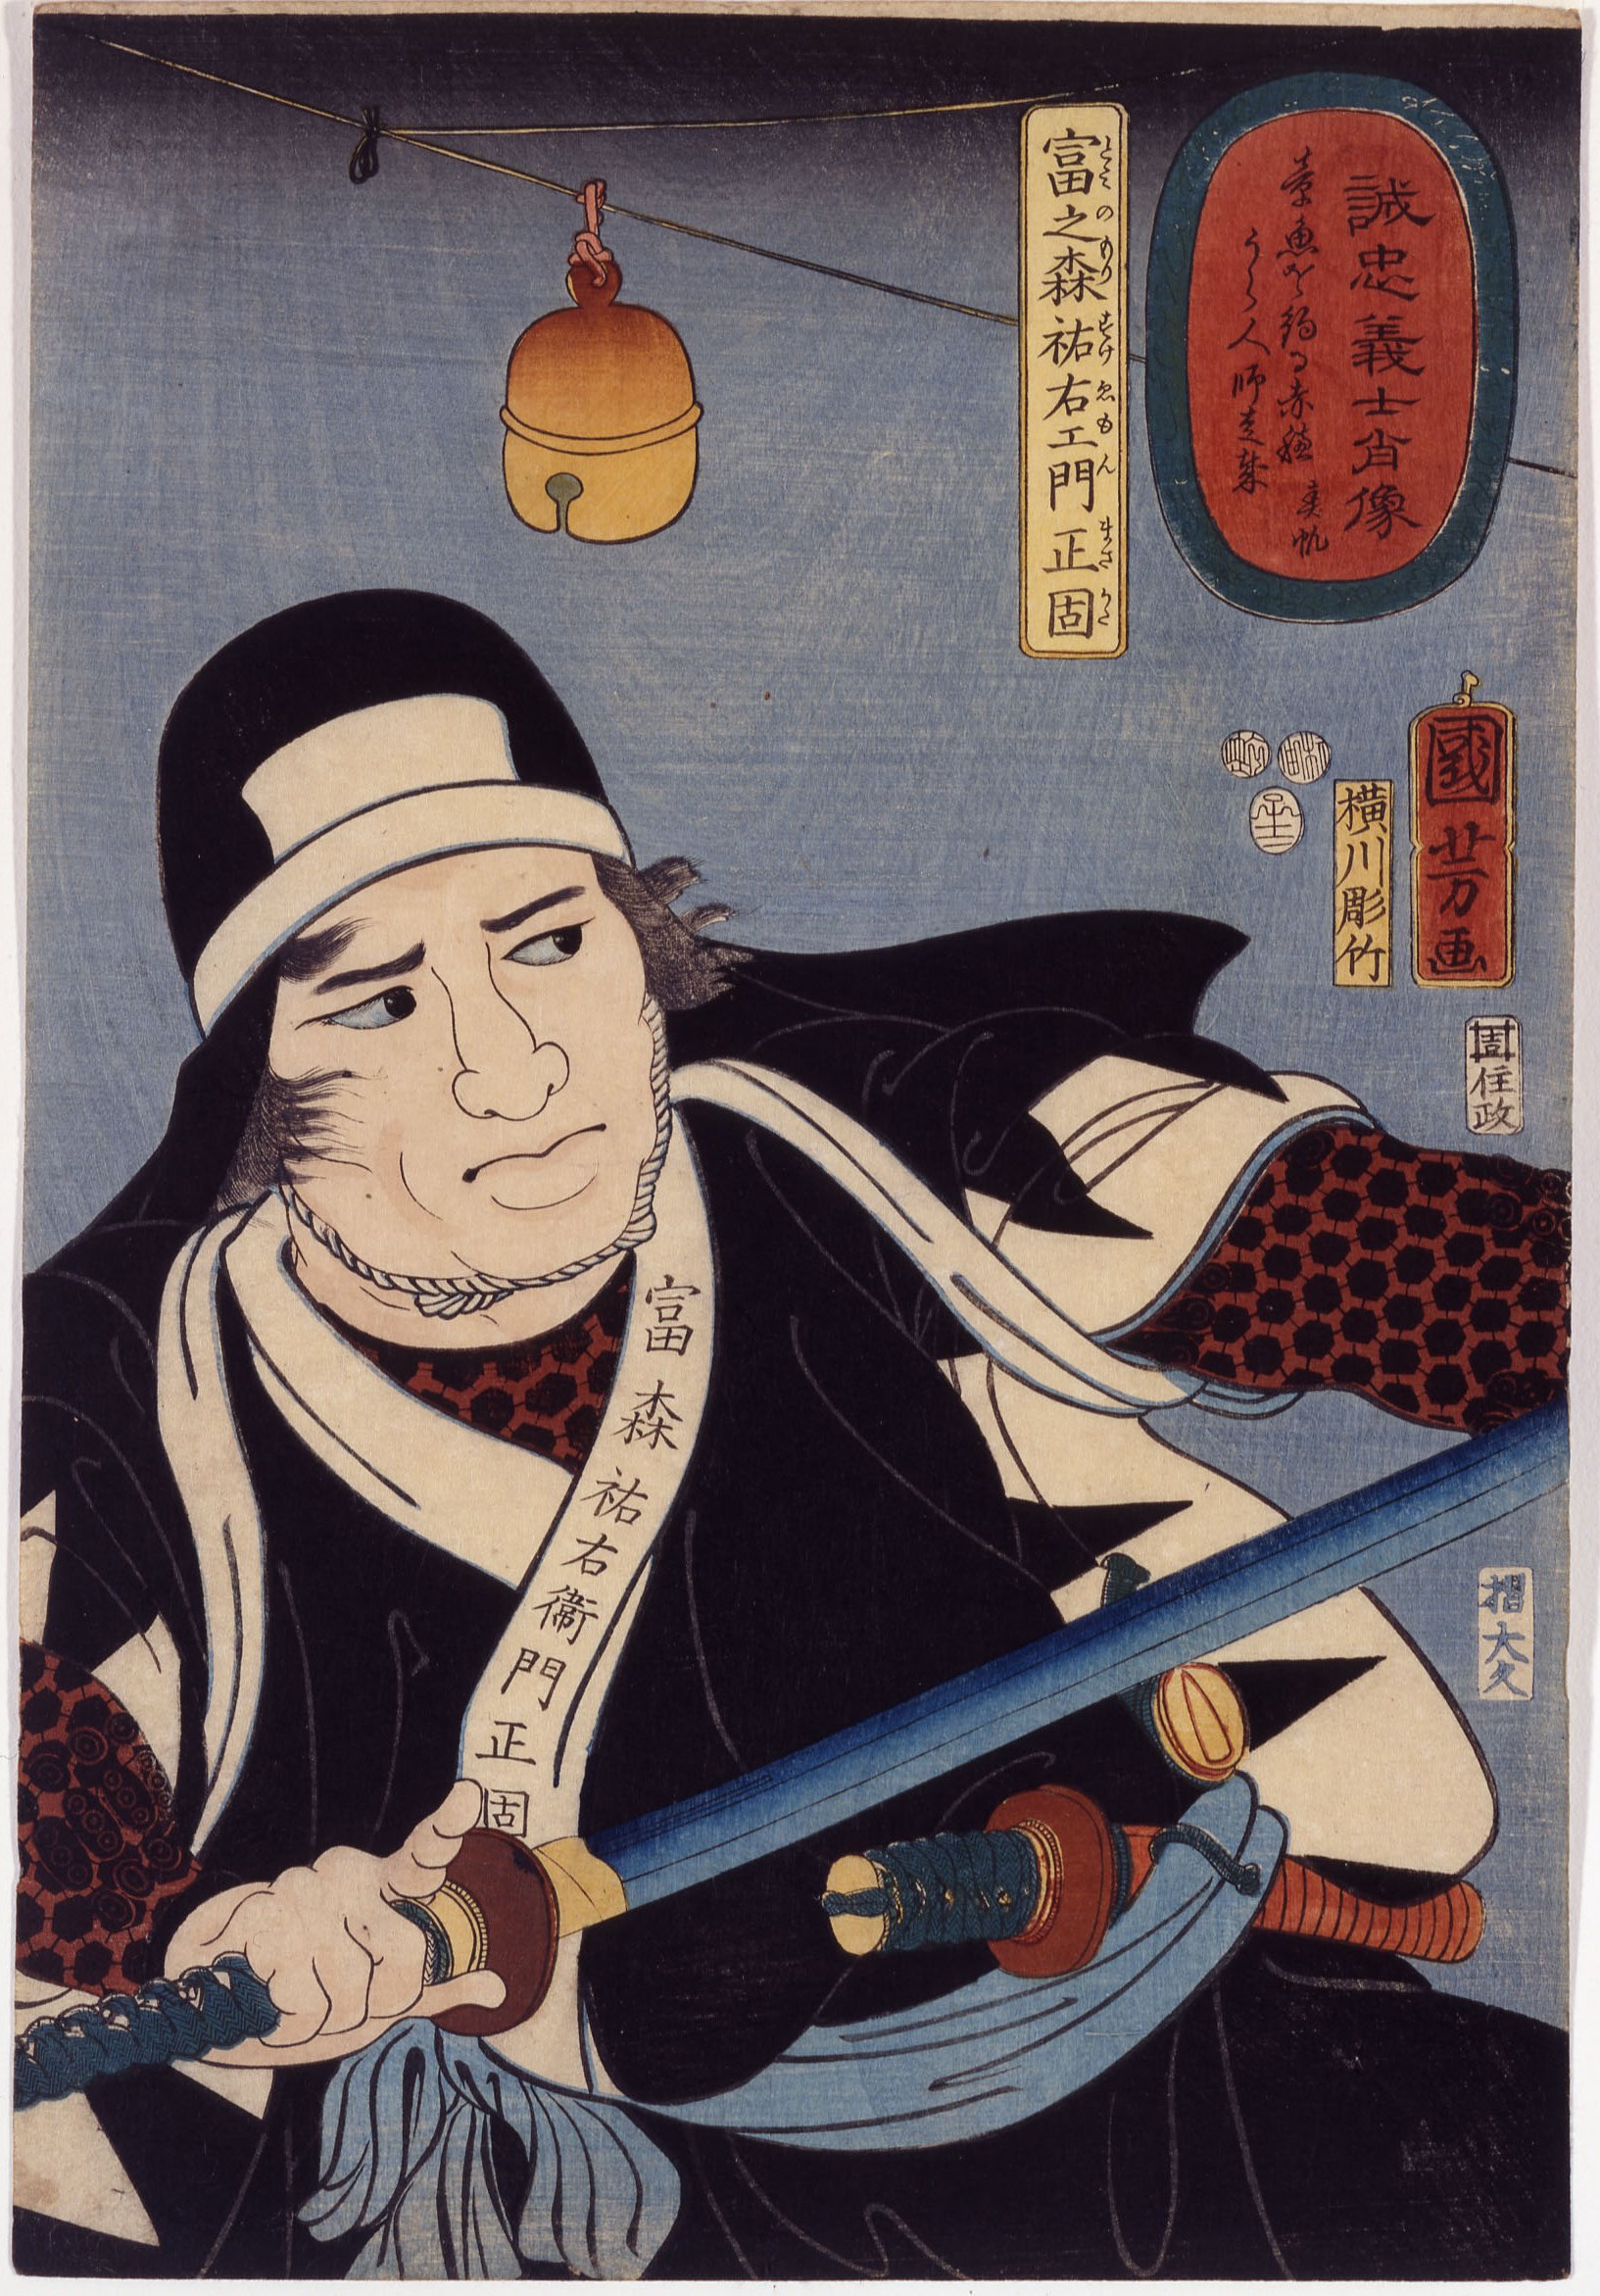 60.D05.535 Tomimori Sukeyemon Masakata, 1852, woodblock print, by Utagawa Kuniyoshi, D’amour Museum of Fine Arts, Springfield Museums, Springfield, MA